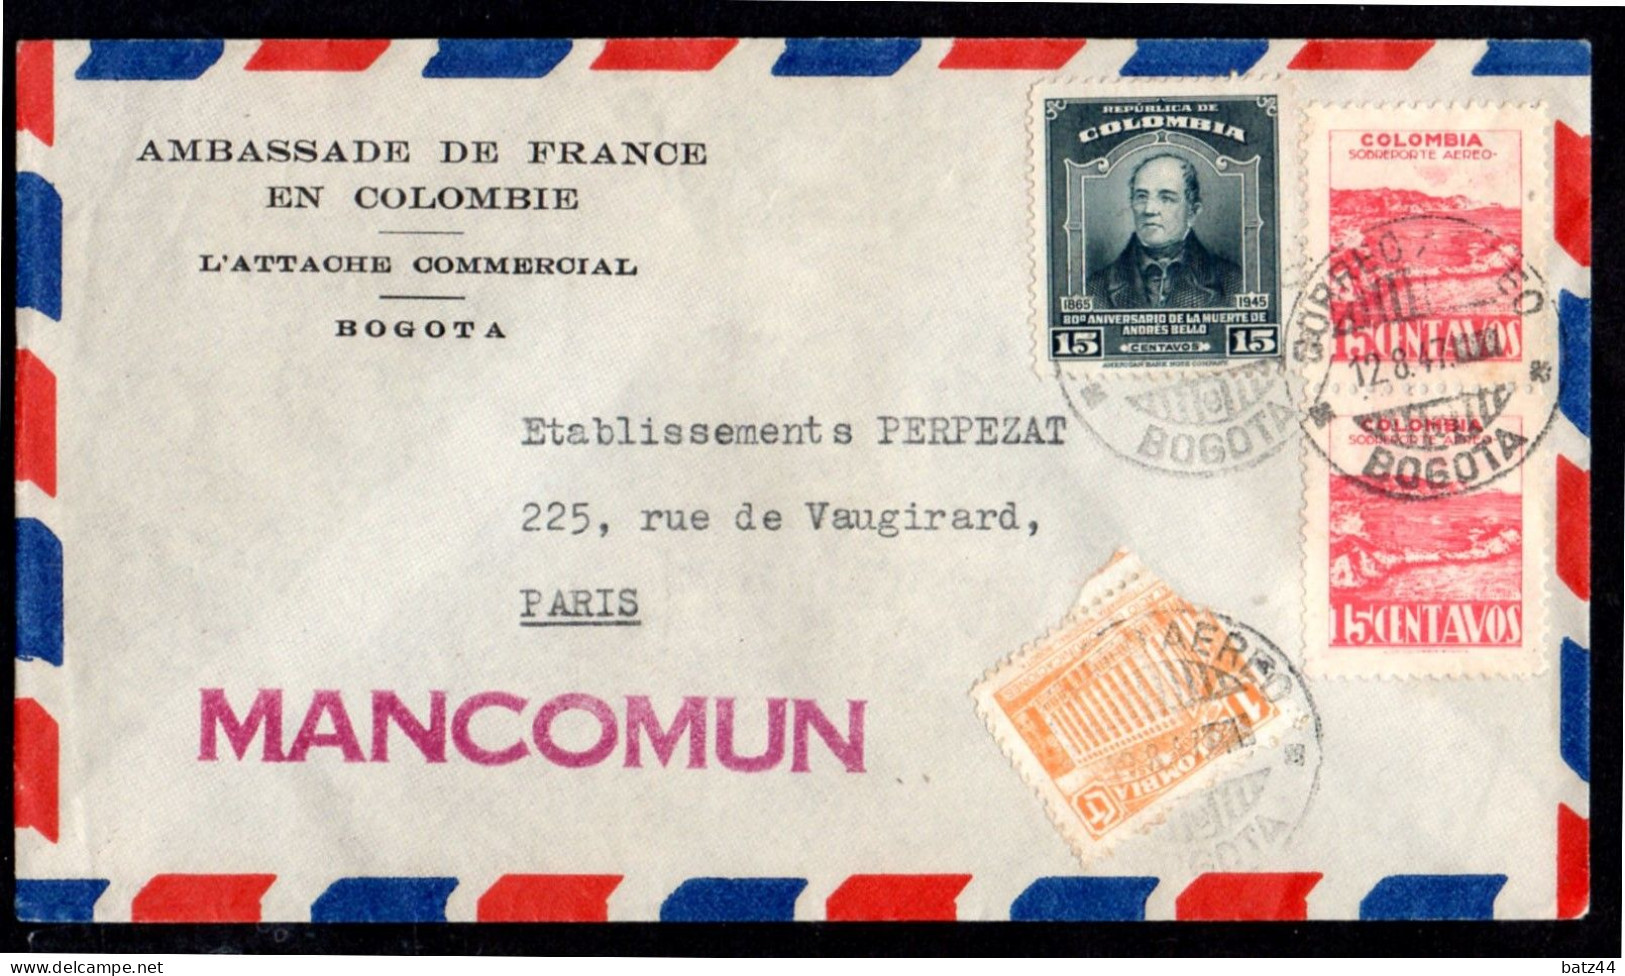 Colombie Colombia Enveloppe Cover Letter Lettre Bogota 12 8 47 Ambassade De France Pour Paris Griffe Linéaire Mancomum - Colombie